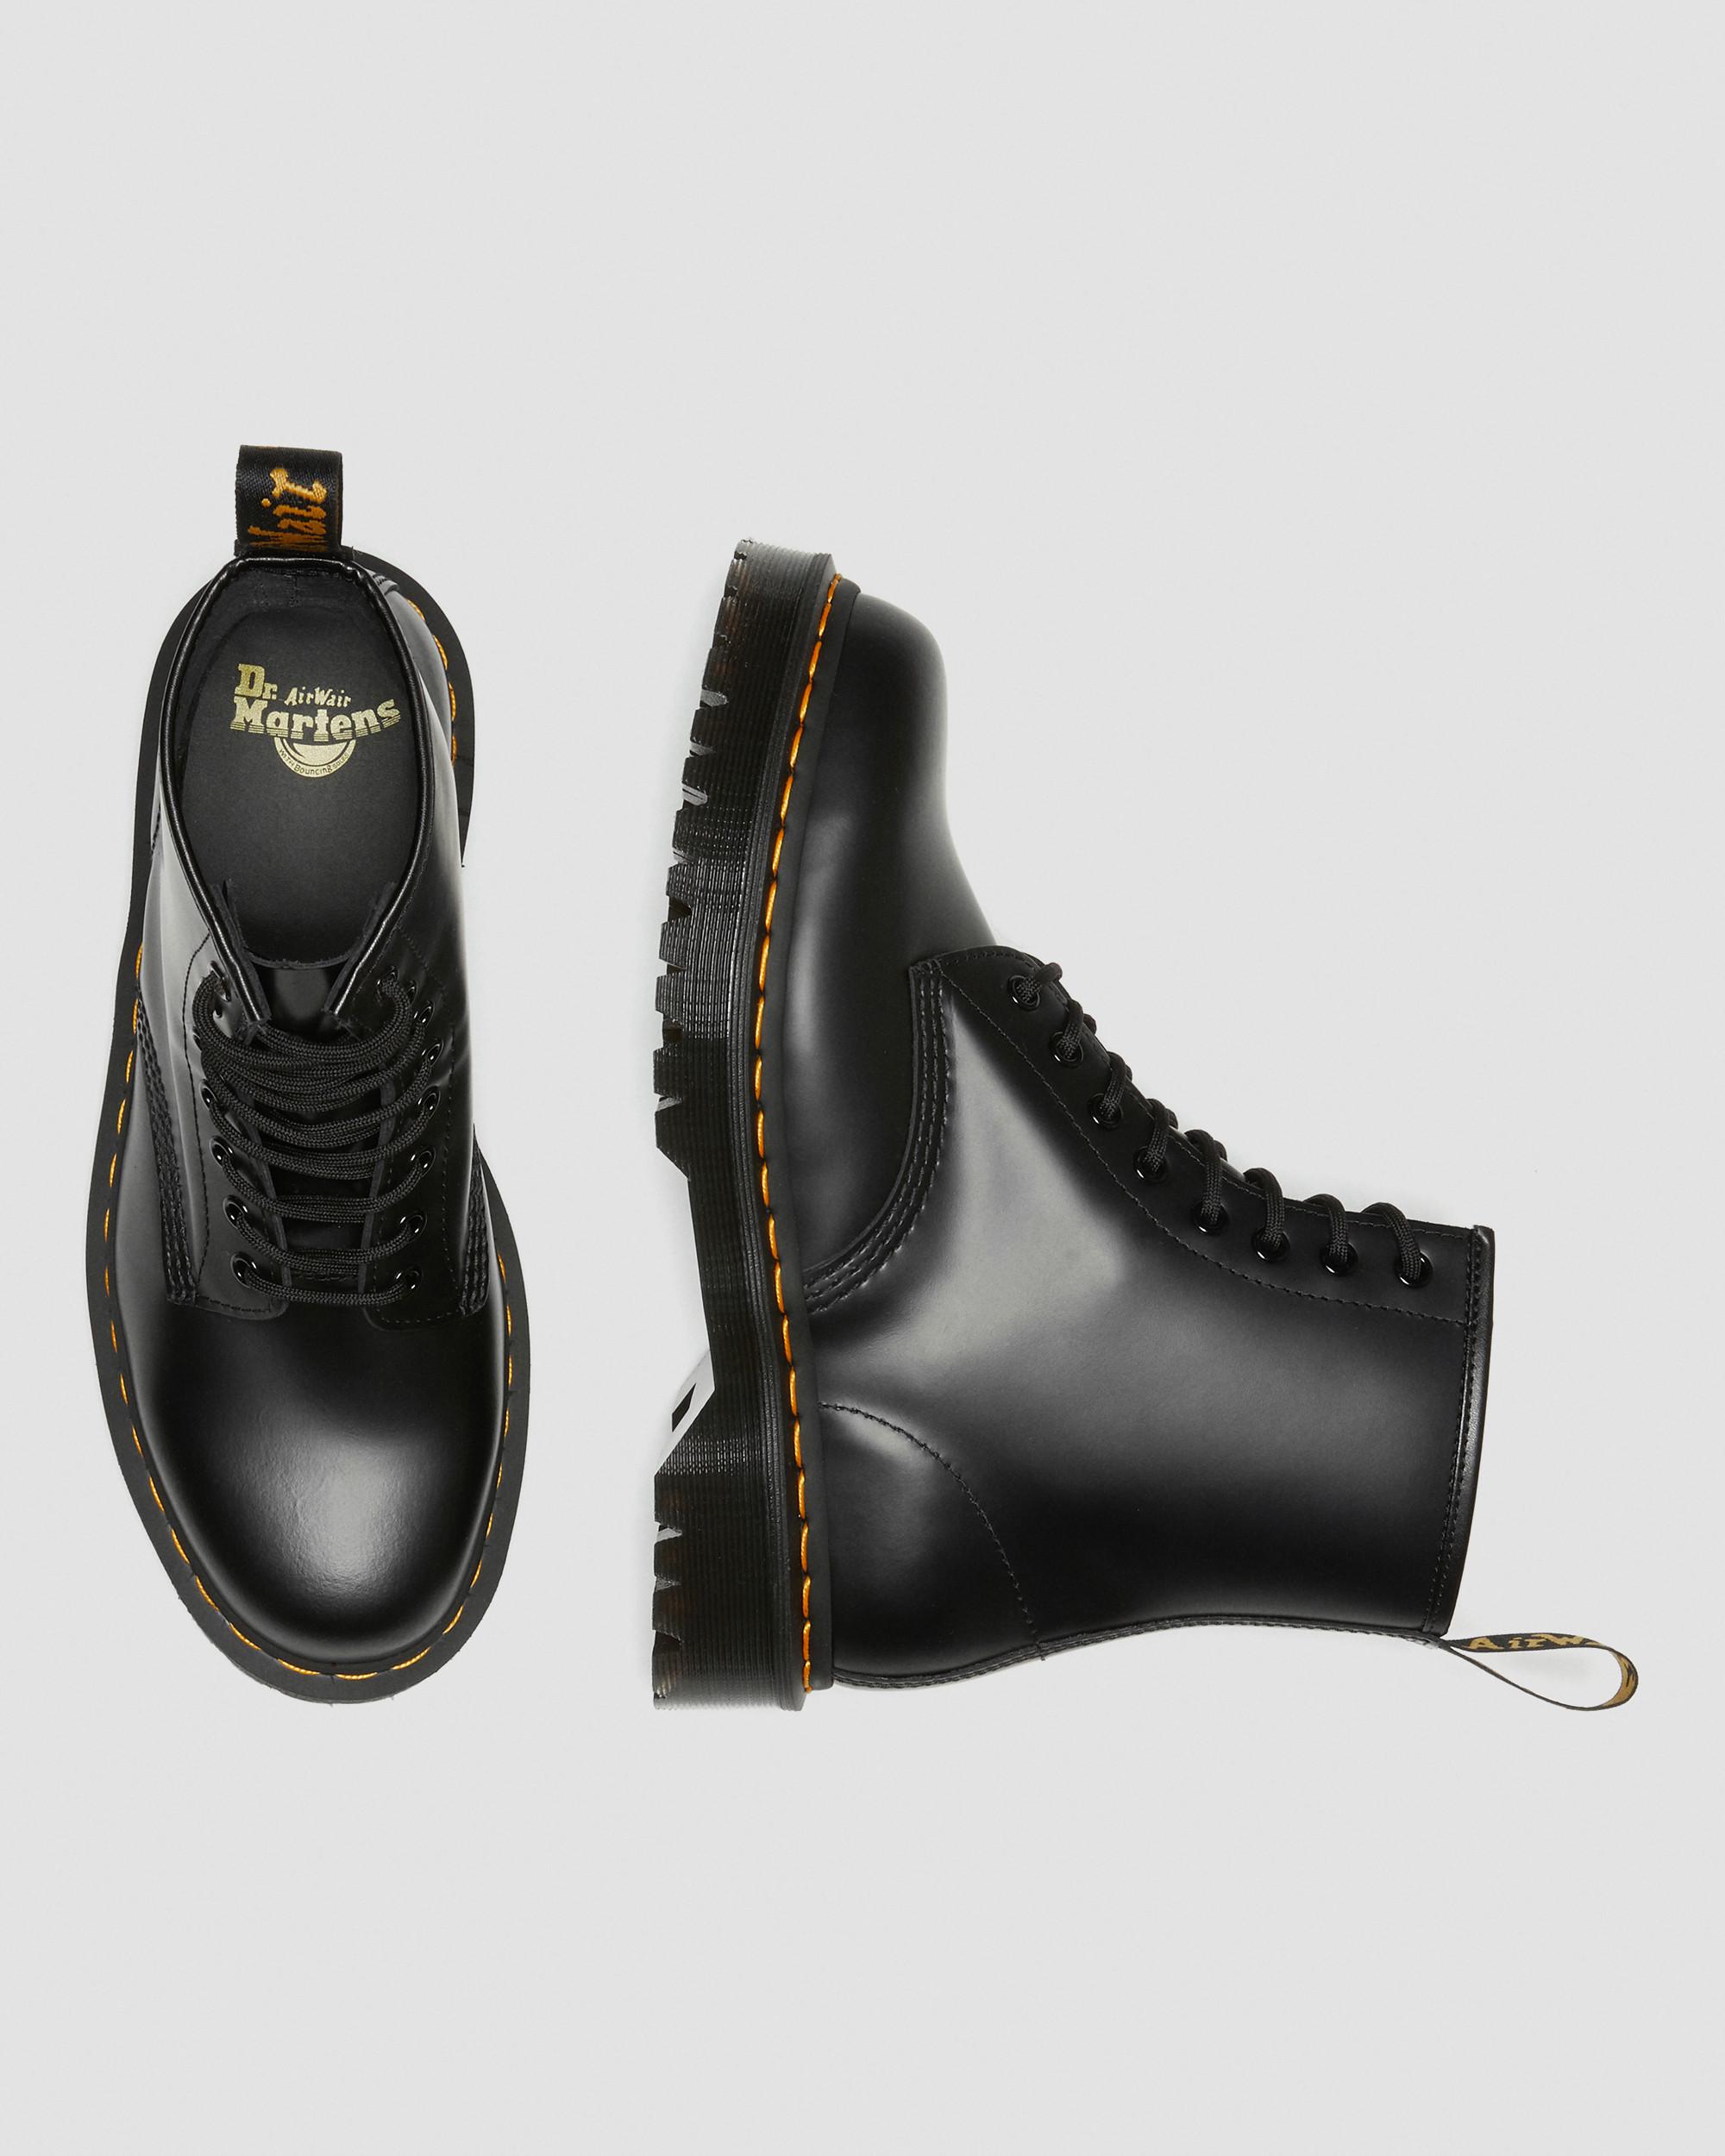 DR MARTENS 1460 Bex Smooth Leather Platform Boots